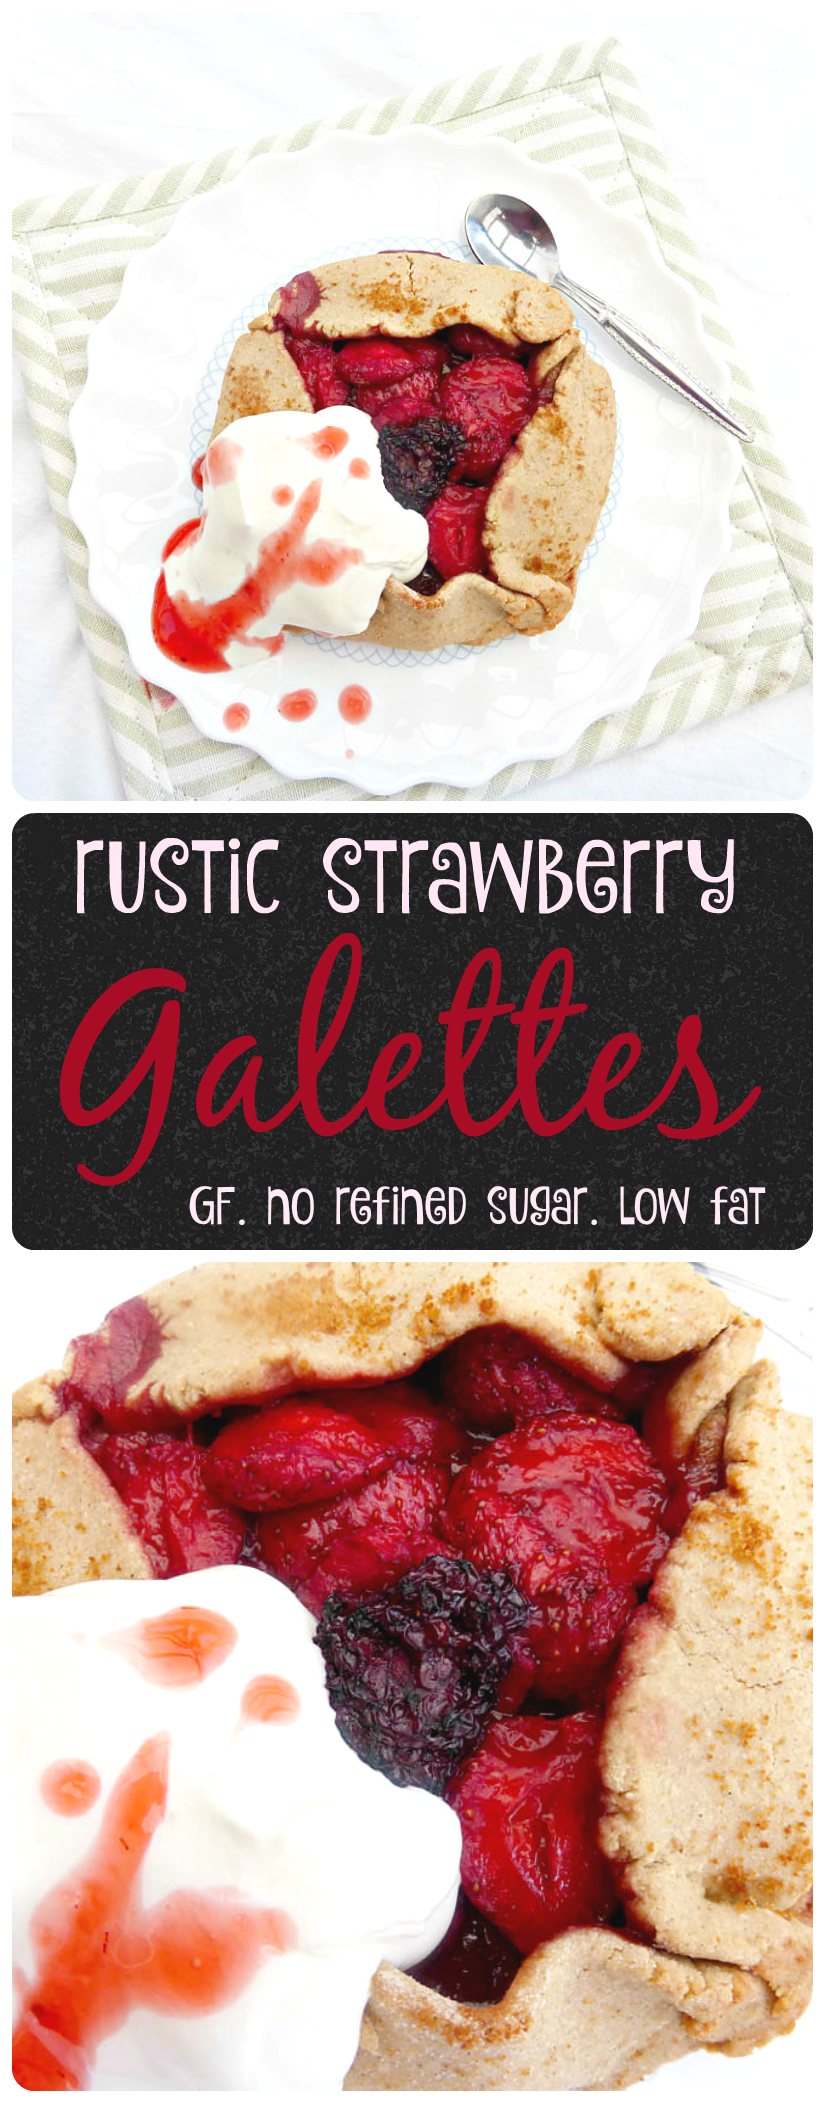 Gluten Free Strawberry Galettes